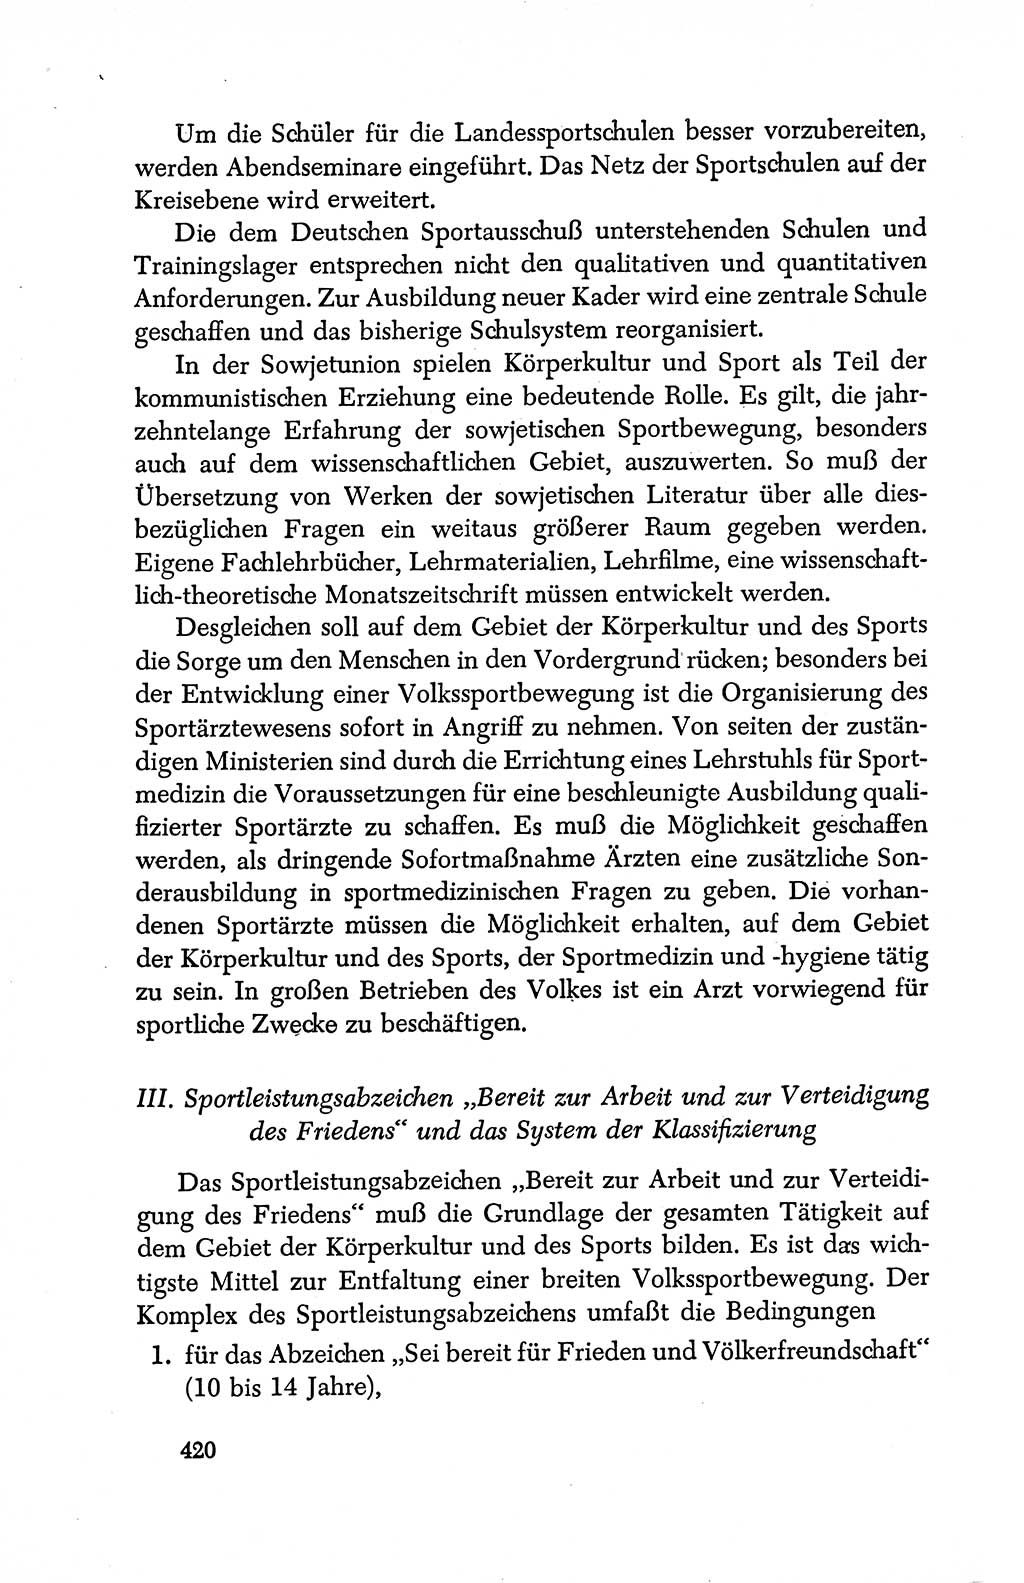 Dokumente der Sozialistischen Einheitspartei Deutschlands (SED) [Deutsche Demokratische Republik (DDR)] 1950-1952, Seite 420 (Dok. SED DDR 1950-1952, S. 420)